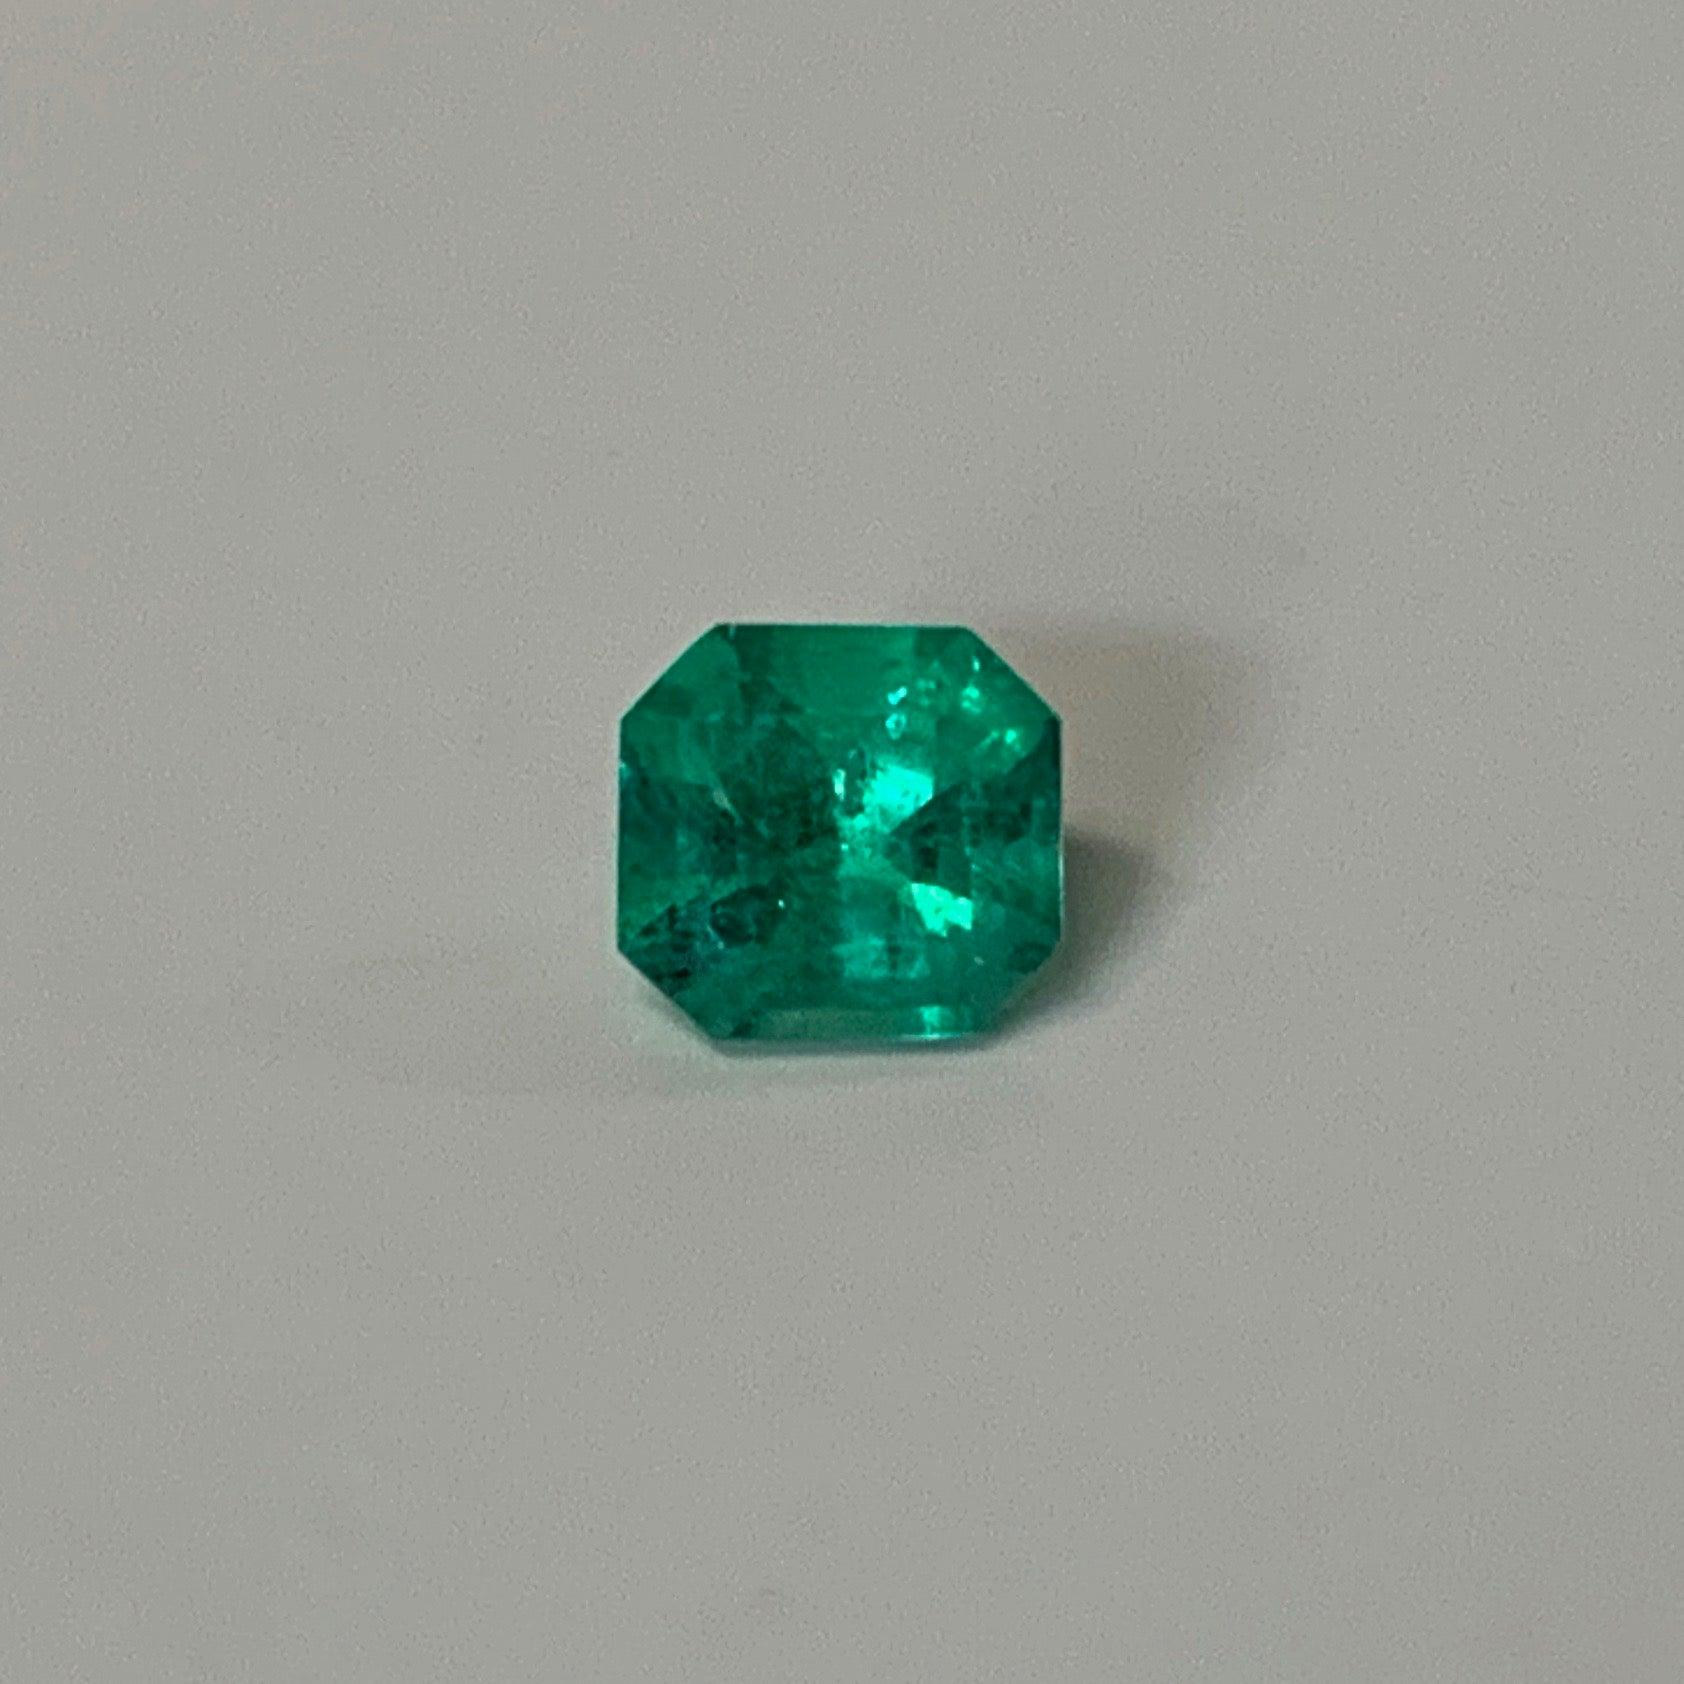 Asscher Cut Green Emerald Loose Gemstone 0.49 carat - Thenetjeweler